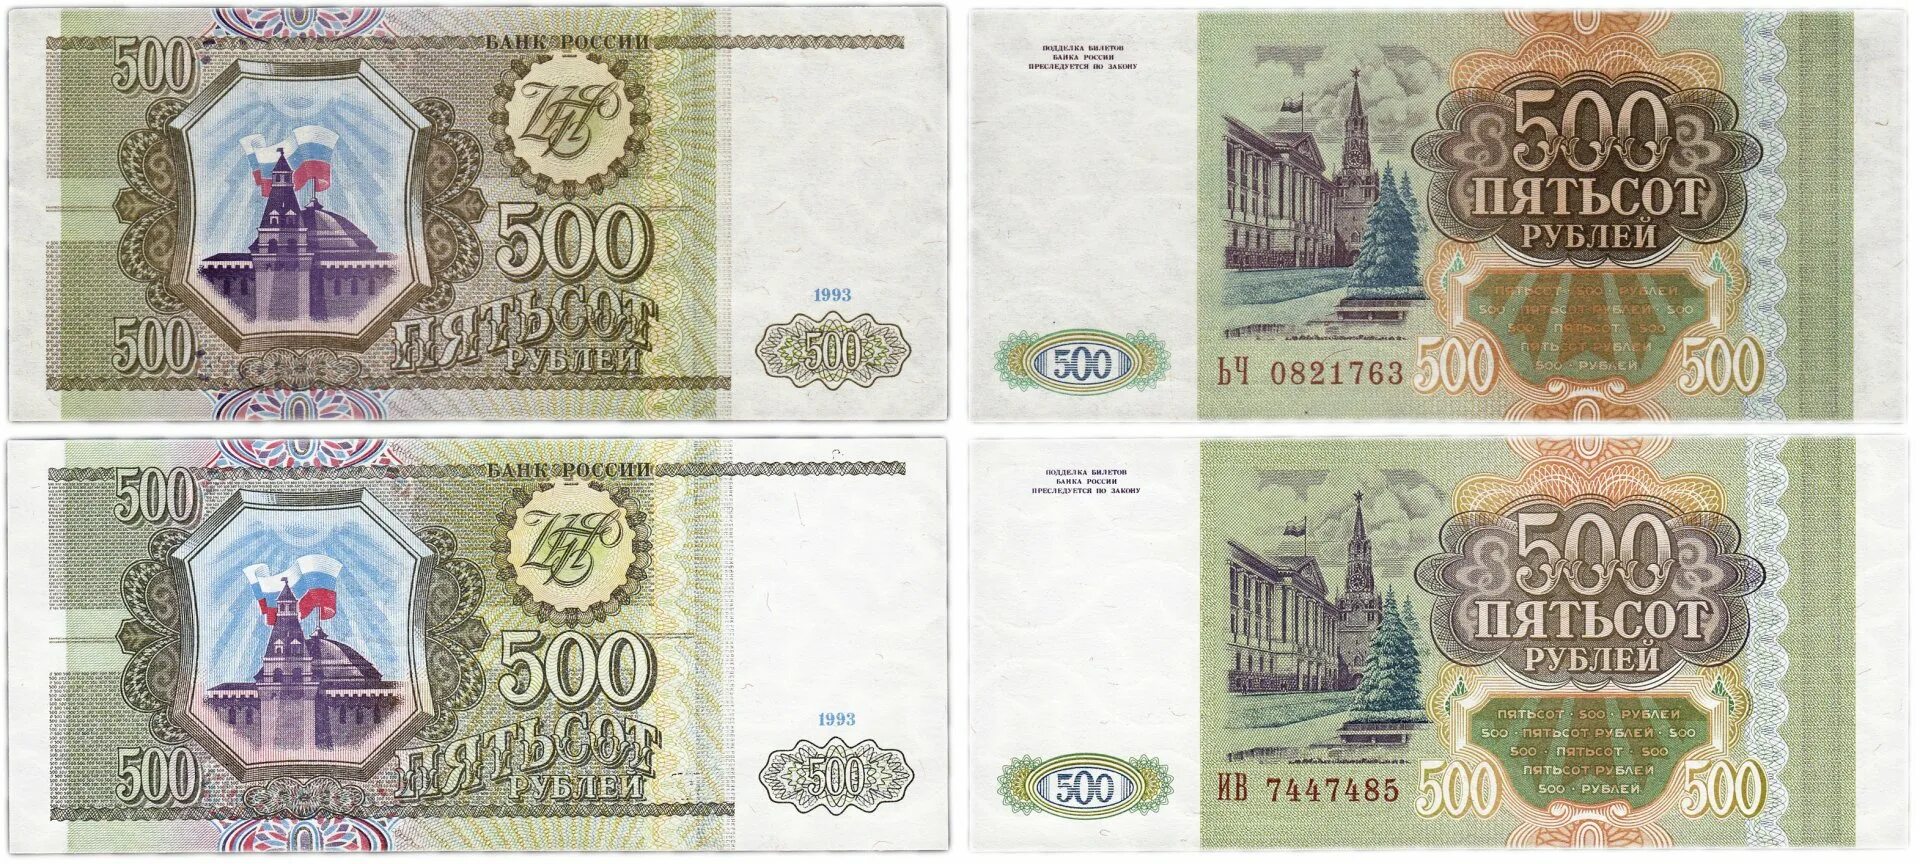 11 500 в рублях. 500 Тысяч рублей 1993. Пятьсот рублей 1993 года. 500 Рублей 1993 года бумажные. 100 И 500 рублей 1993 года бумажные.